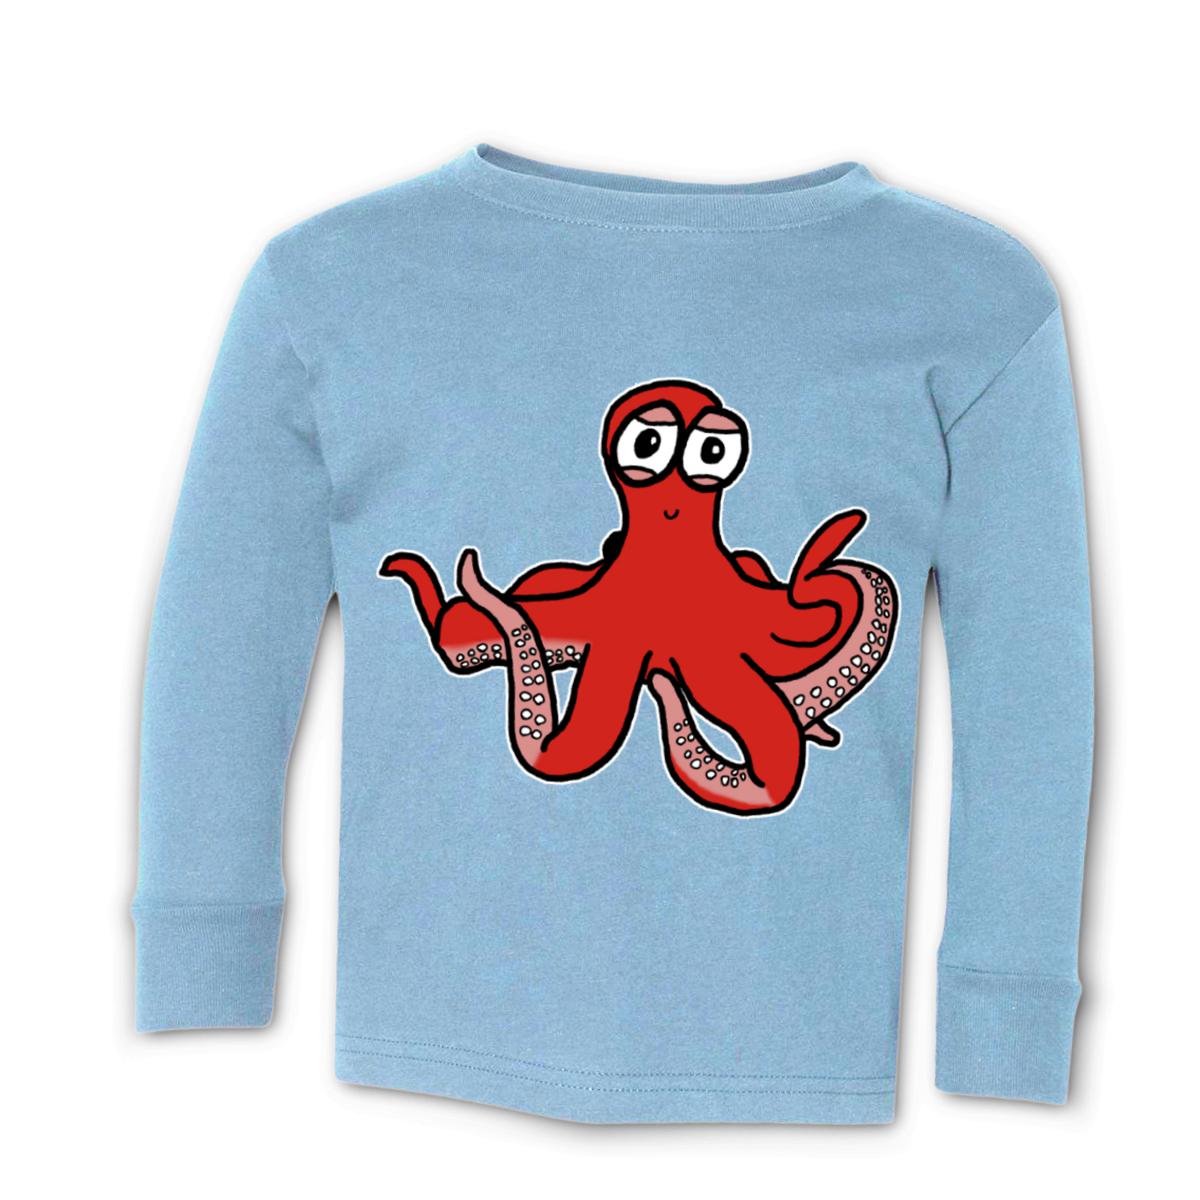 Octopus Toddler Long Sleeve Tee 56T light-blue